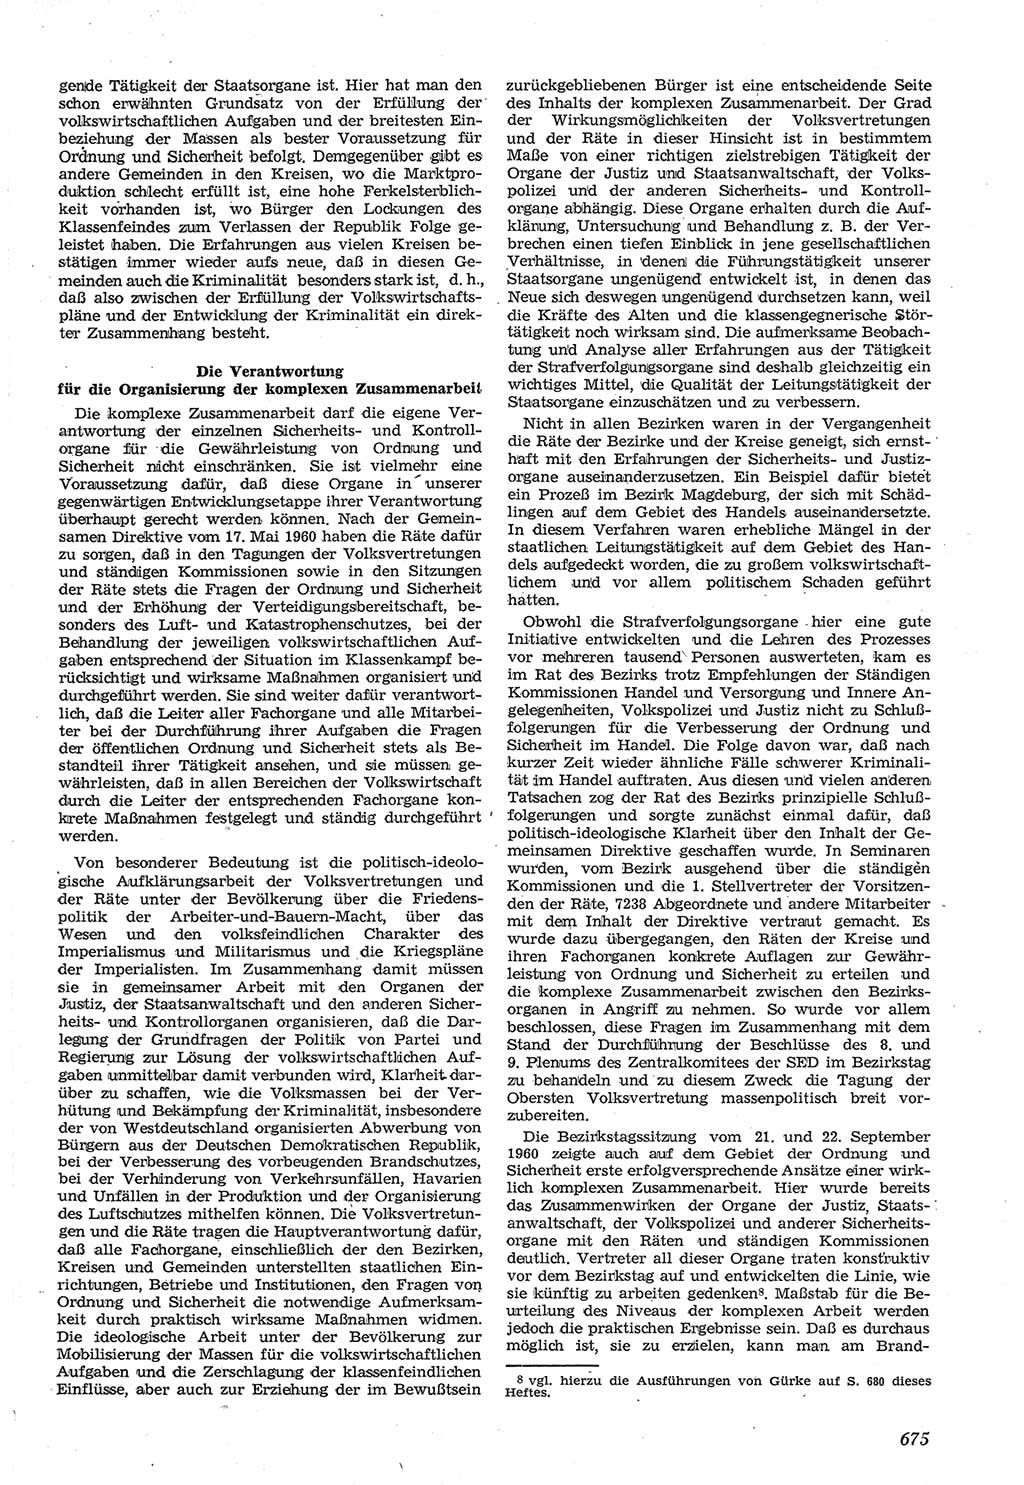 Neue Justiz (NJ), Zeitschrift für Recht und Rechtswissenschaft [Deutsche Demokratische Republik (DDR)], 14. Jahrgang 1960, Seite 675 (NJ DDR 1960, S. 675)